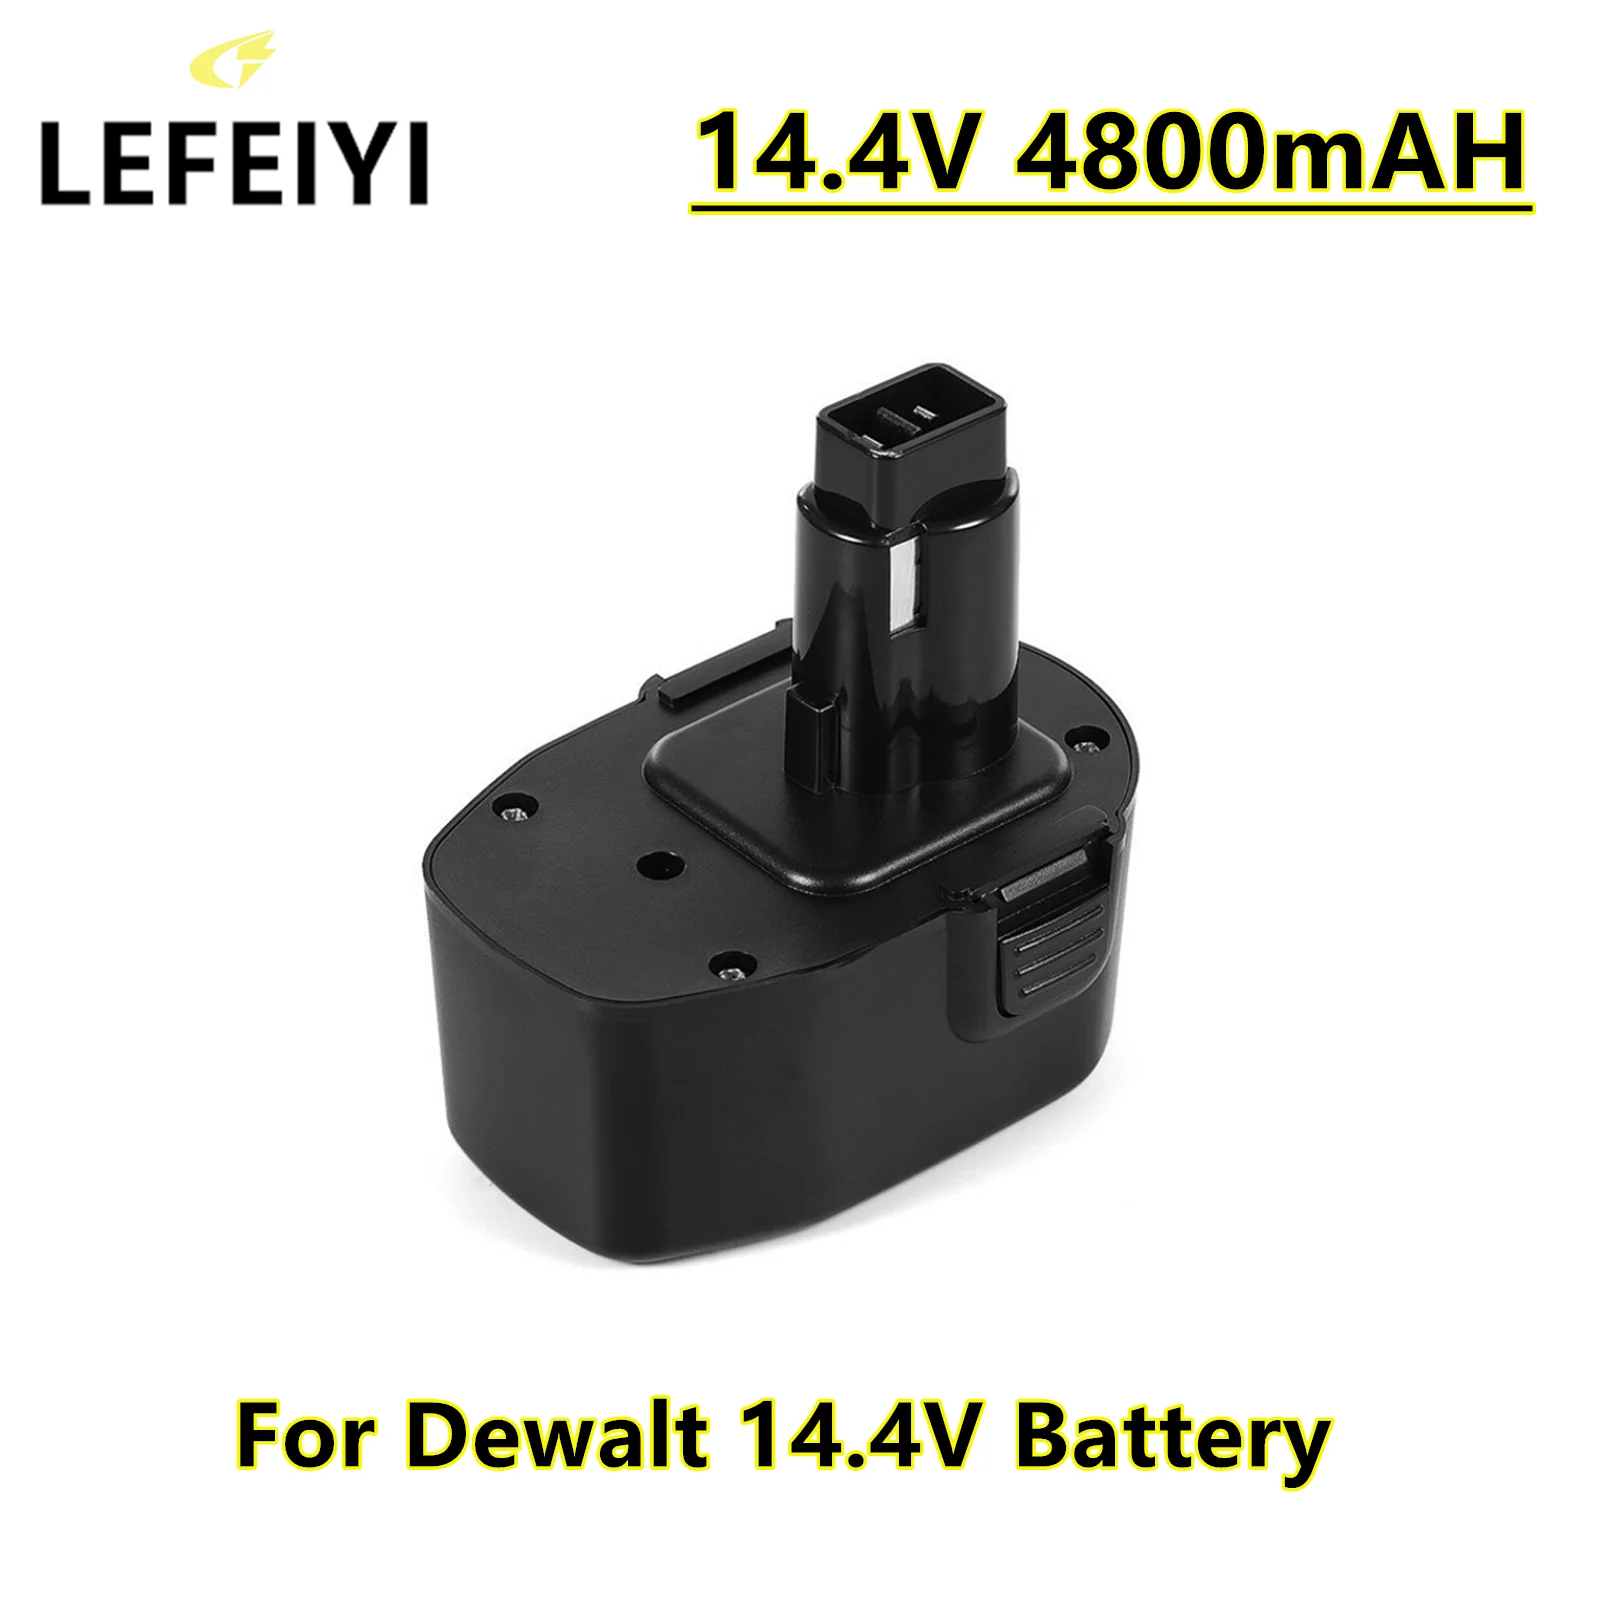 

LEFEIYI Ni-MH 4800mAh Replacement Battery for Dewalt 14.4V XRP DC9091 DC9094 DW9091 DE9091 DE9092 14.4 Volt Cordless Power Tools